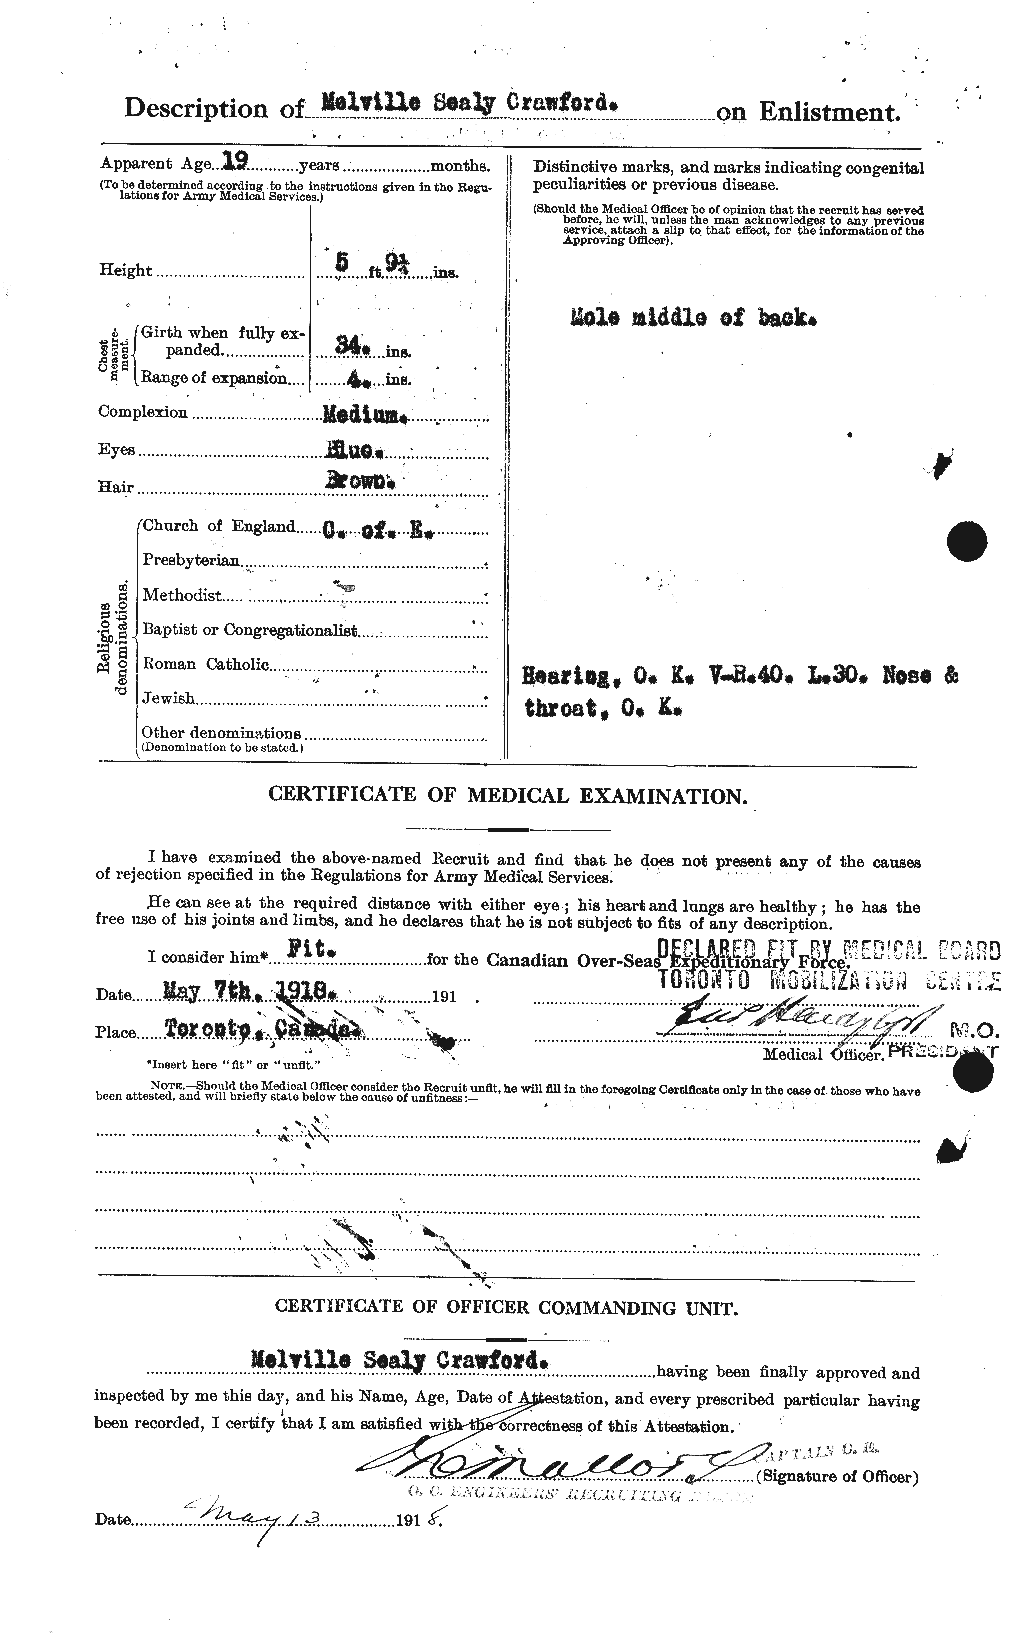 Dossiers du Personnel de la Première Guerre mondiale - CEC 061778b